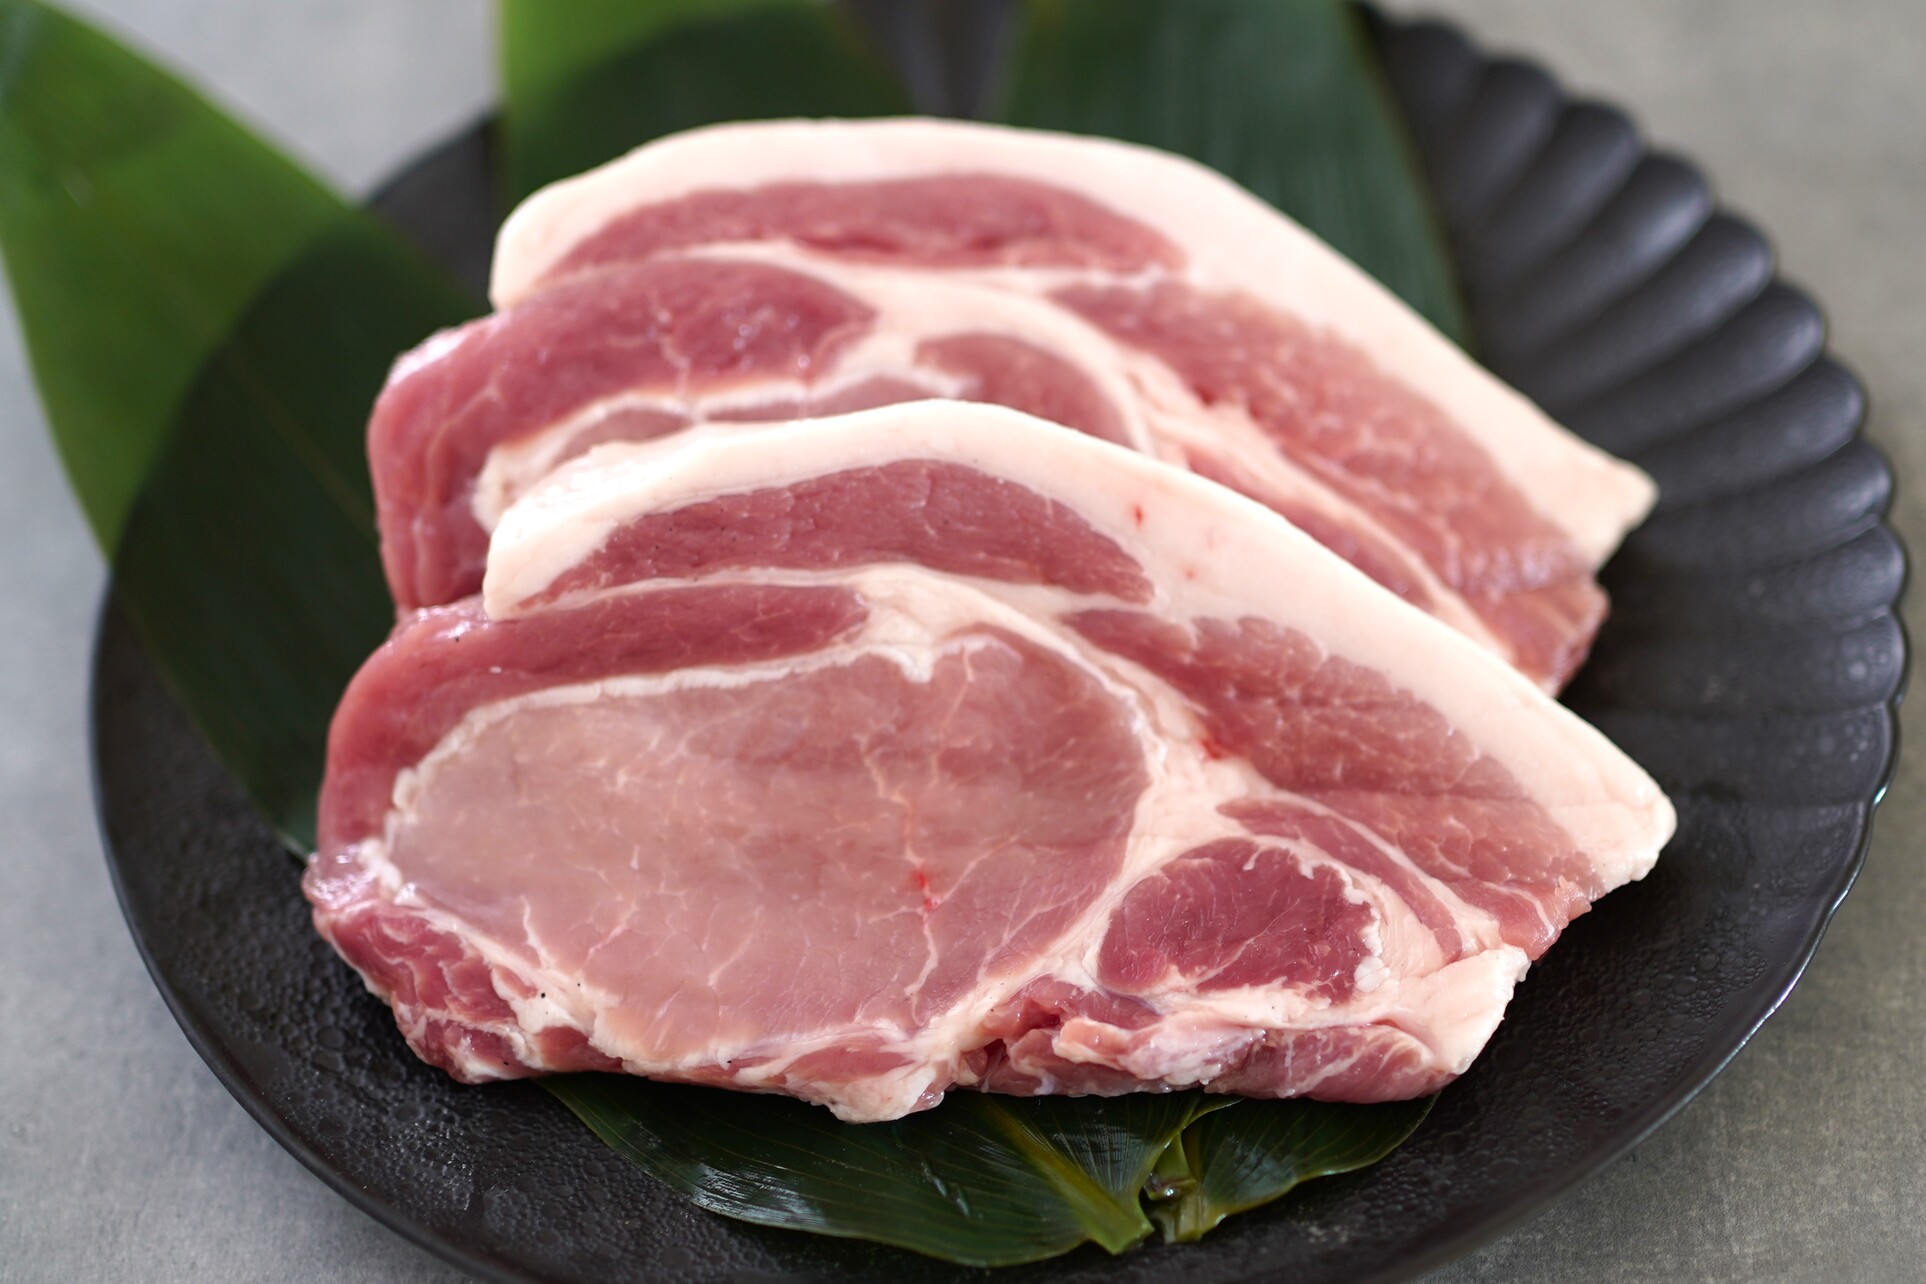 北海道産ブランドSPF豚「若松ポークマン」の至福の焼肉・ステーキセット